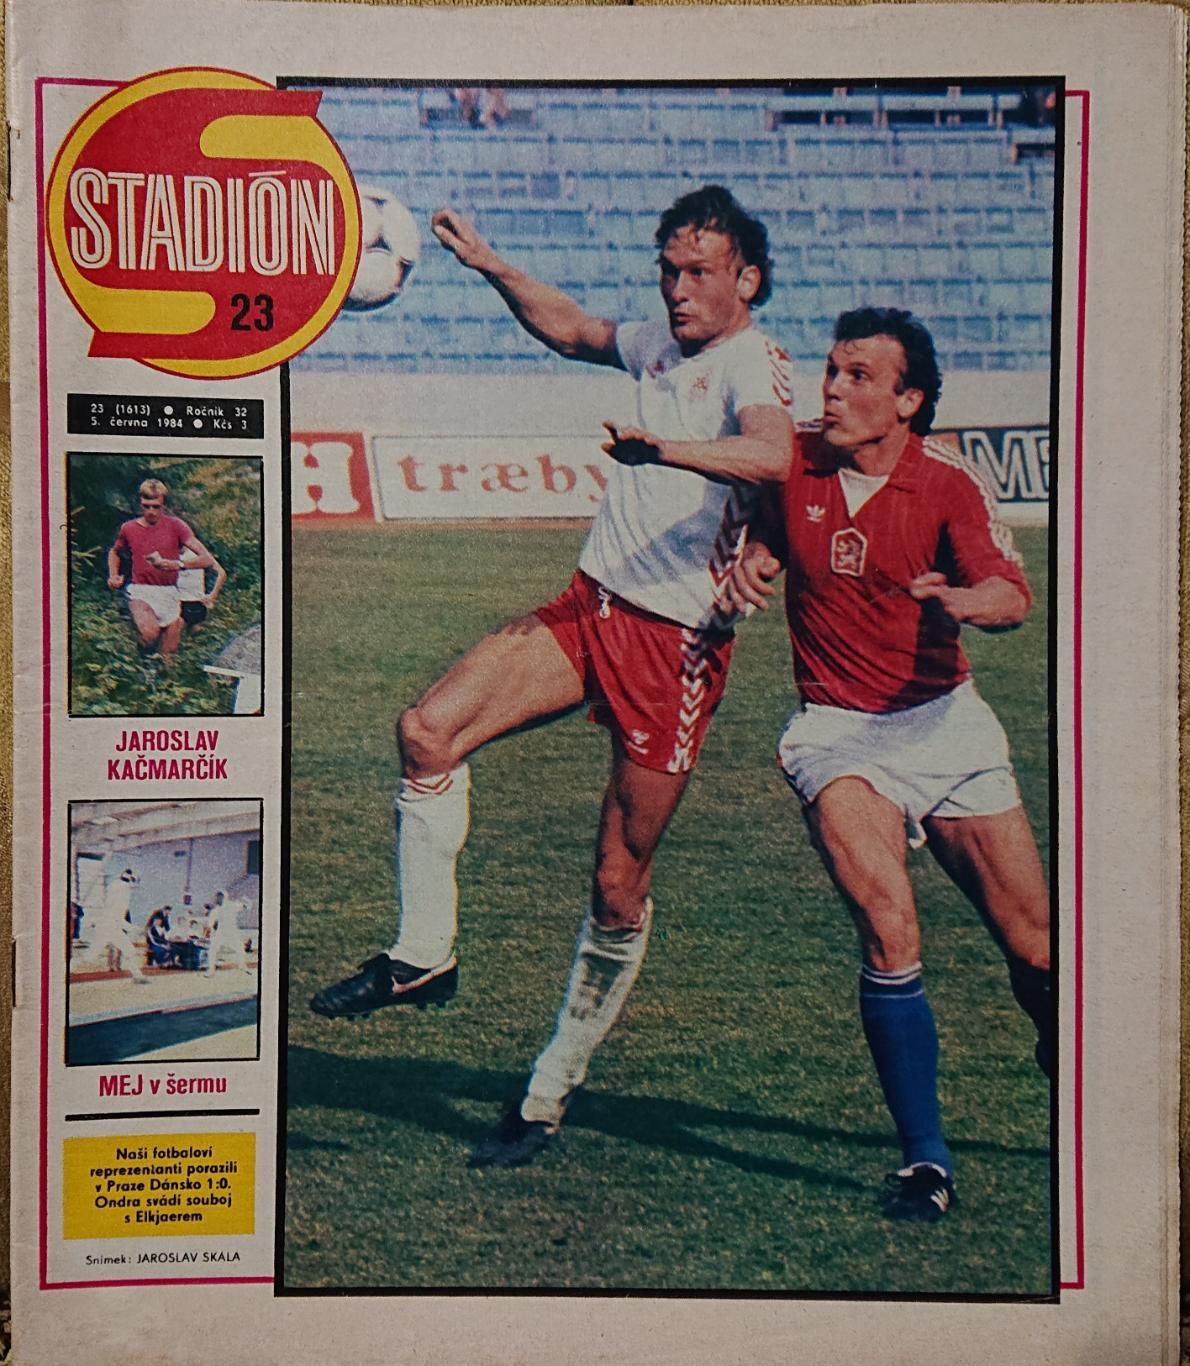 Журнал. Стадіон. Stadion. N23/1984.Без постера Данії.